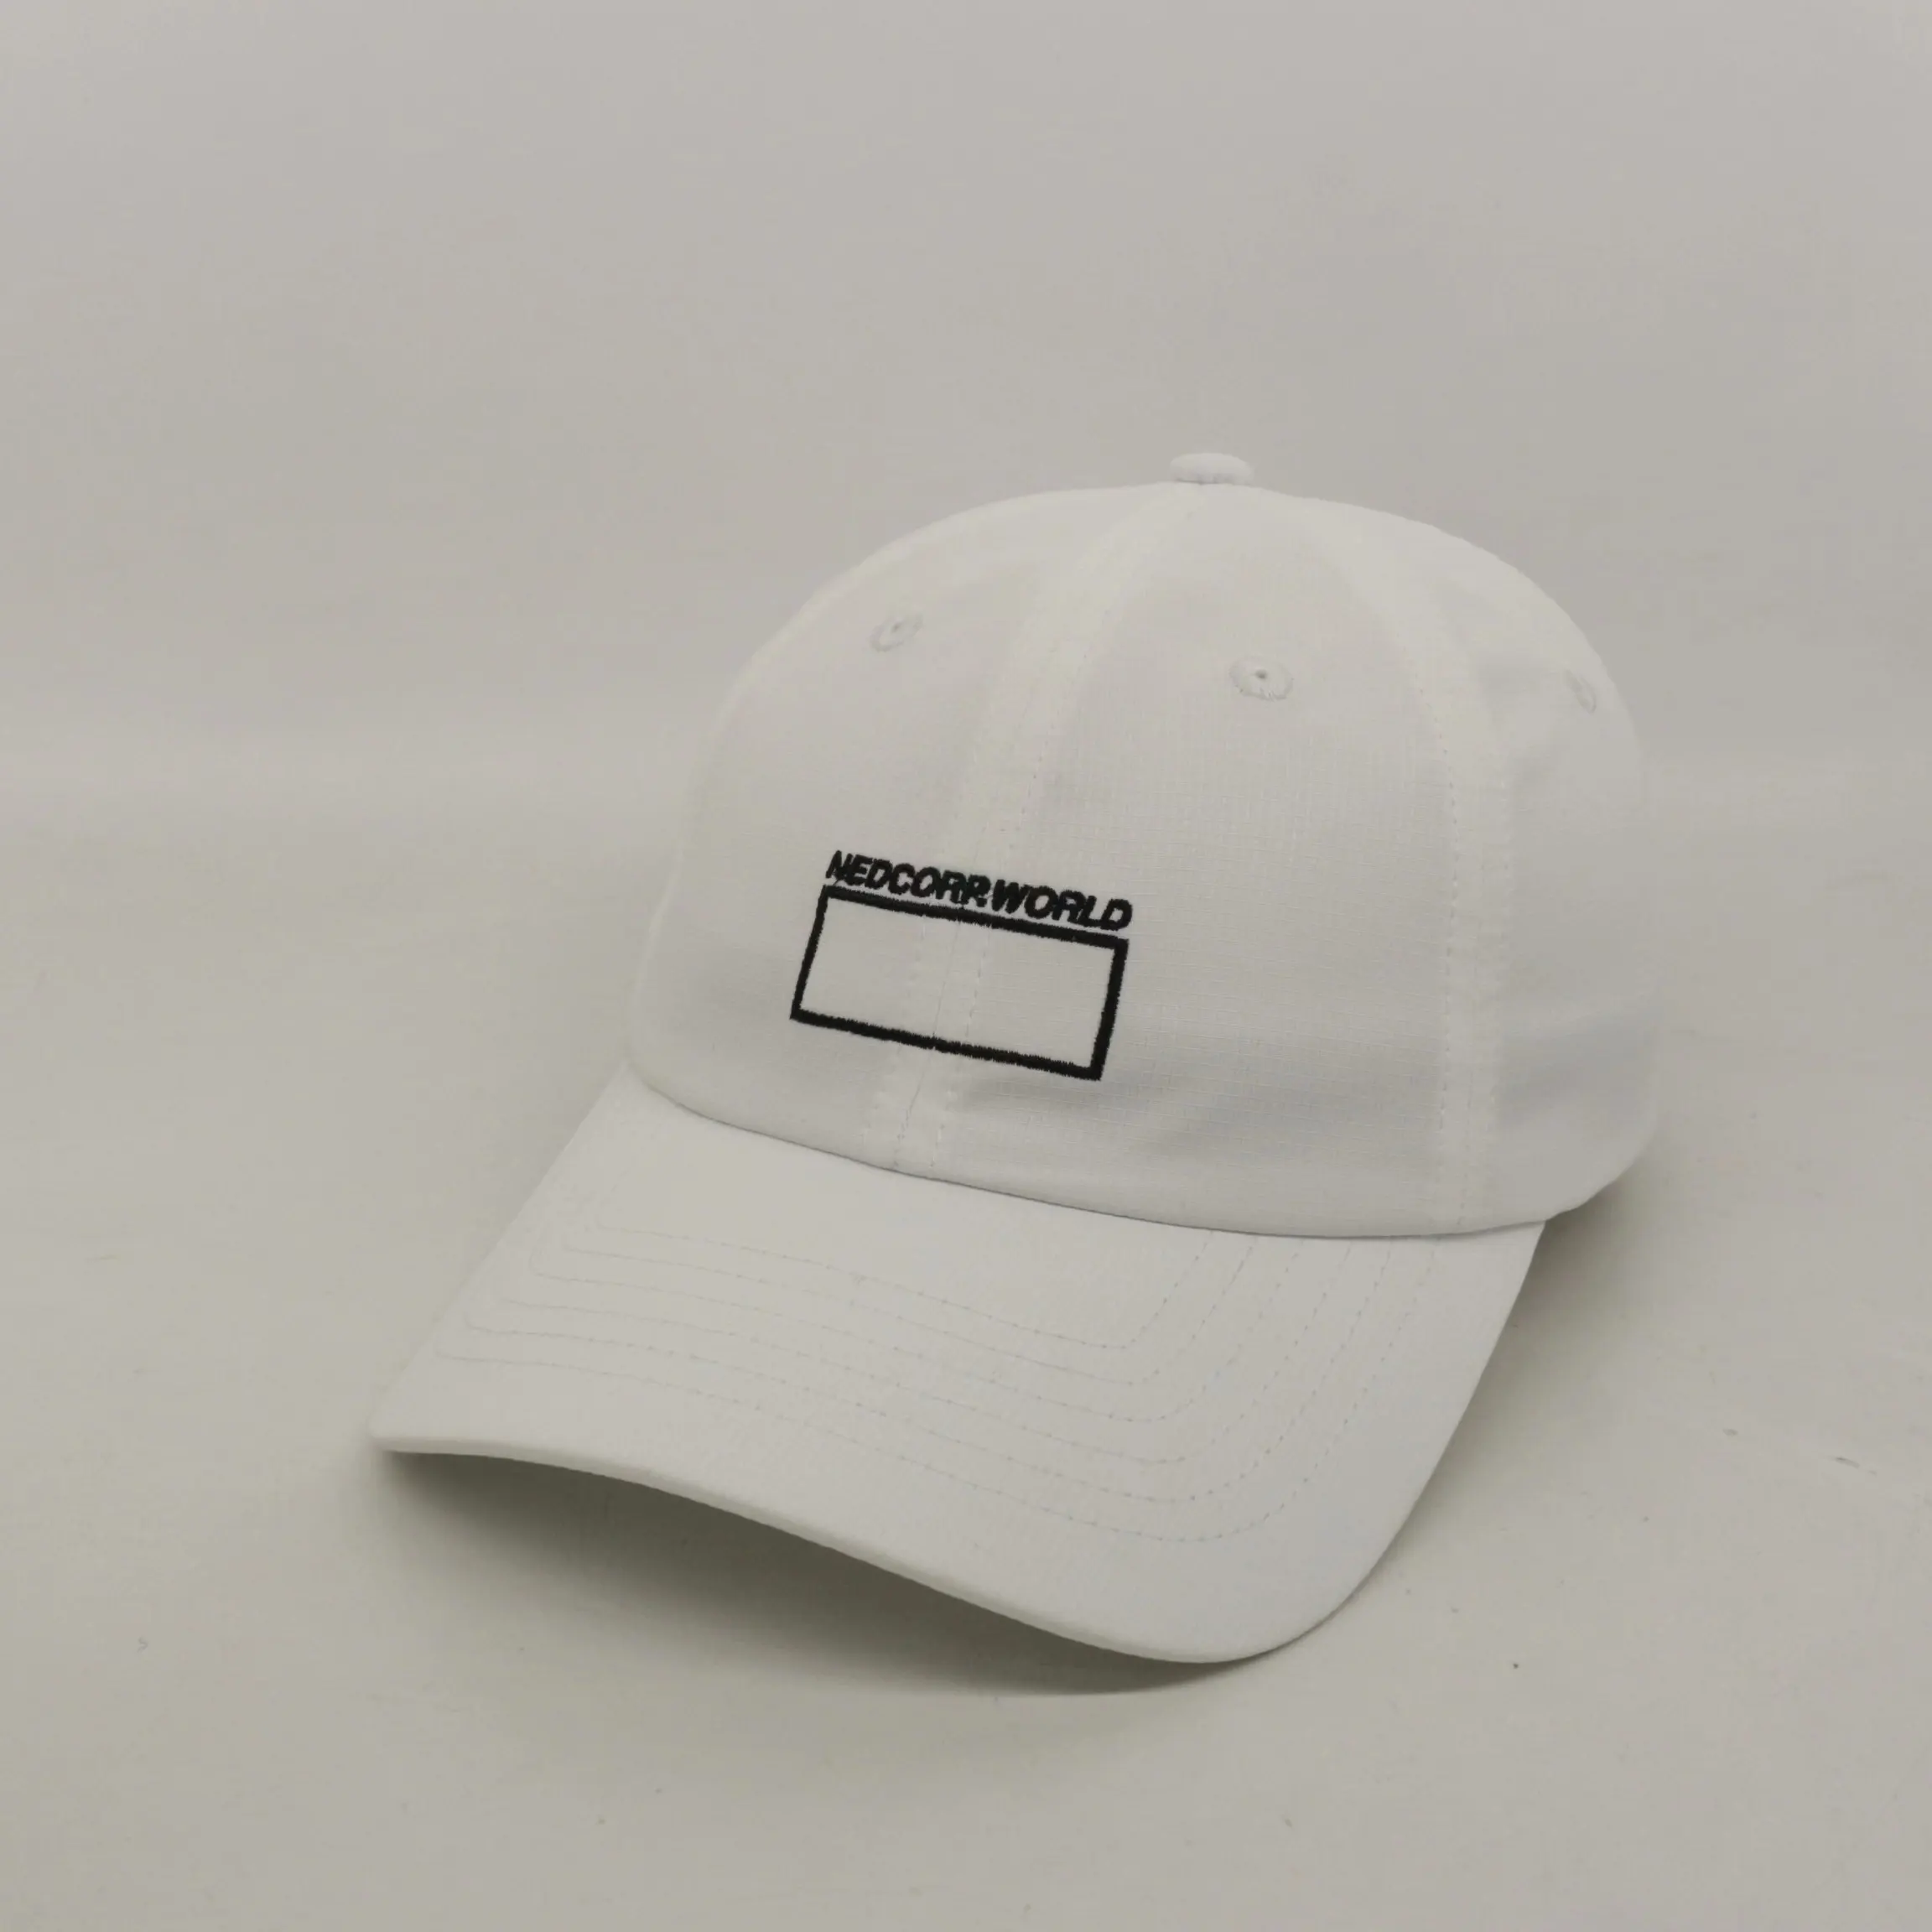 OEM fábrica proveedor sombrerero blanco bordado 6 paneles sin estructura gorra personalizada ripstop nylon deportes sombrero